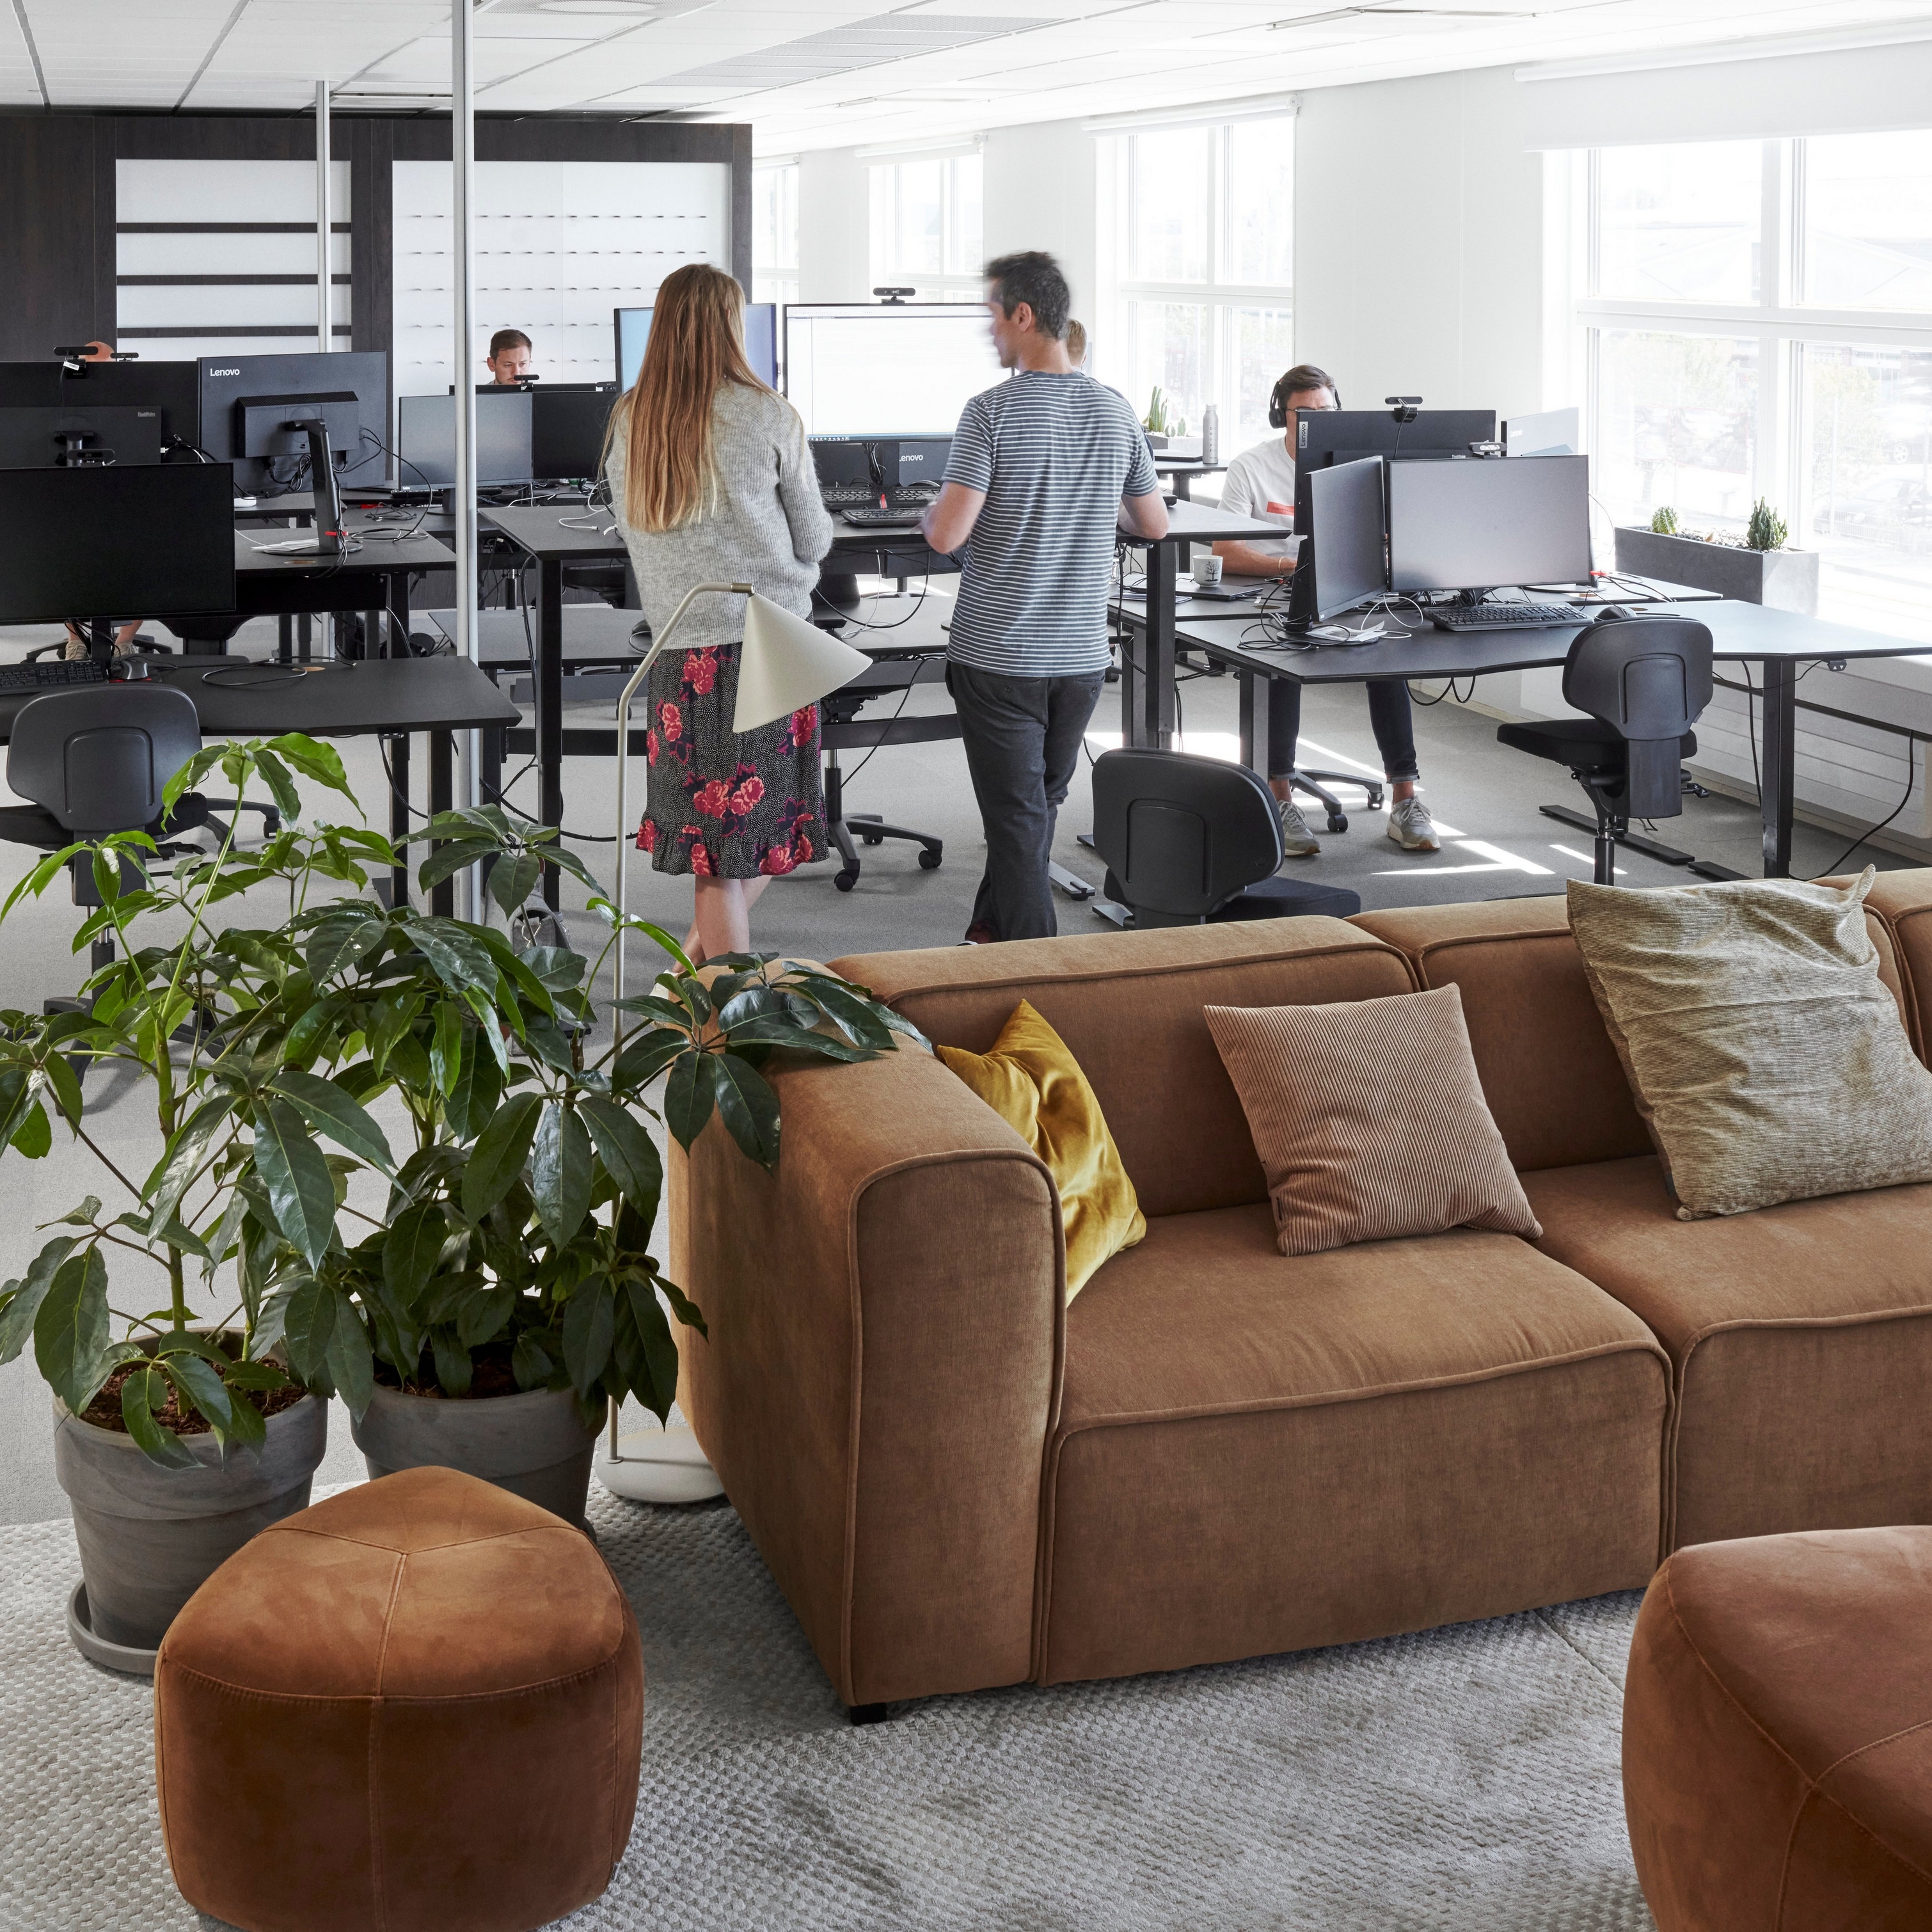 Espacio de oficina moderno en el corporativo de BoConcept con empleados, computadoras, plantas y un sofá Carmo marrón.